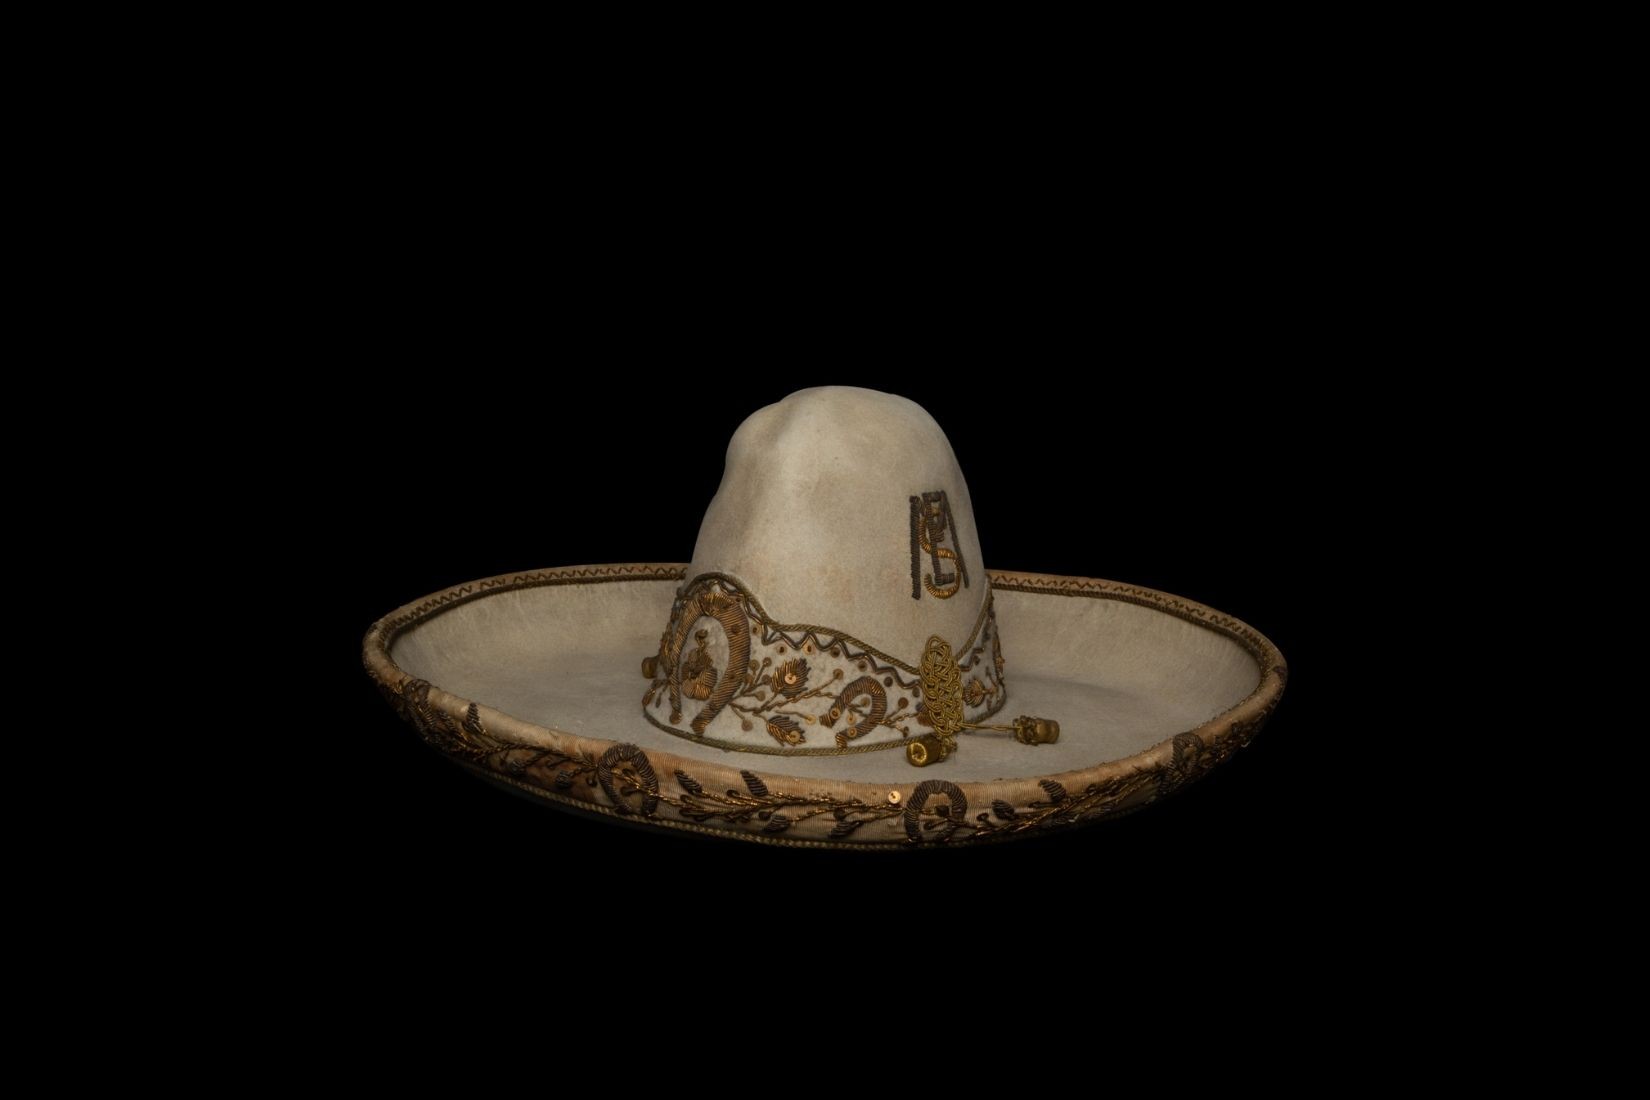 Sombrero de charro de fieltro cosido y bordado a mano. Artesano y procedencia desconocidos. Col. Marie Thérèse Hermand de Arango. (Foto: EKV).